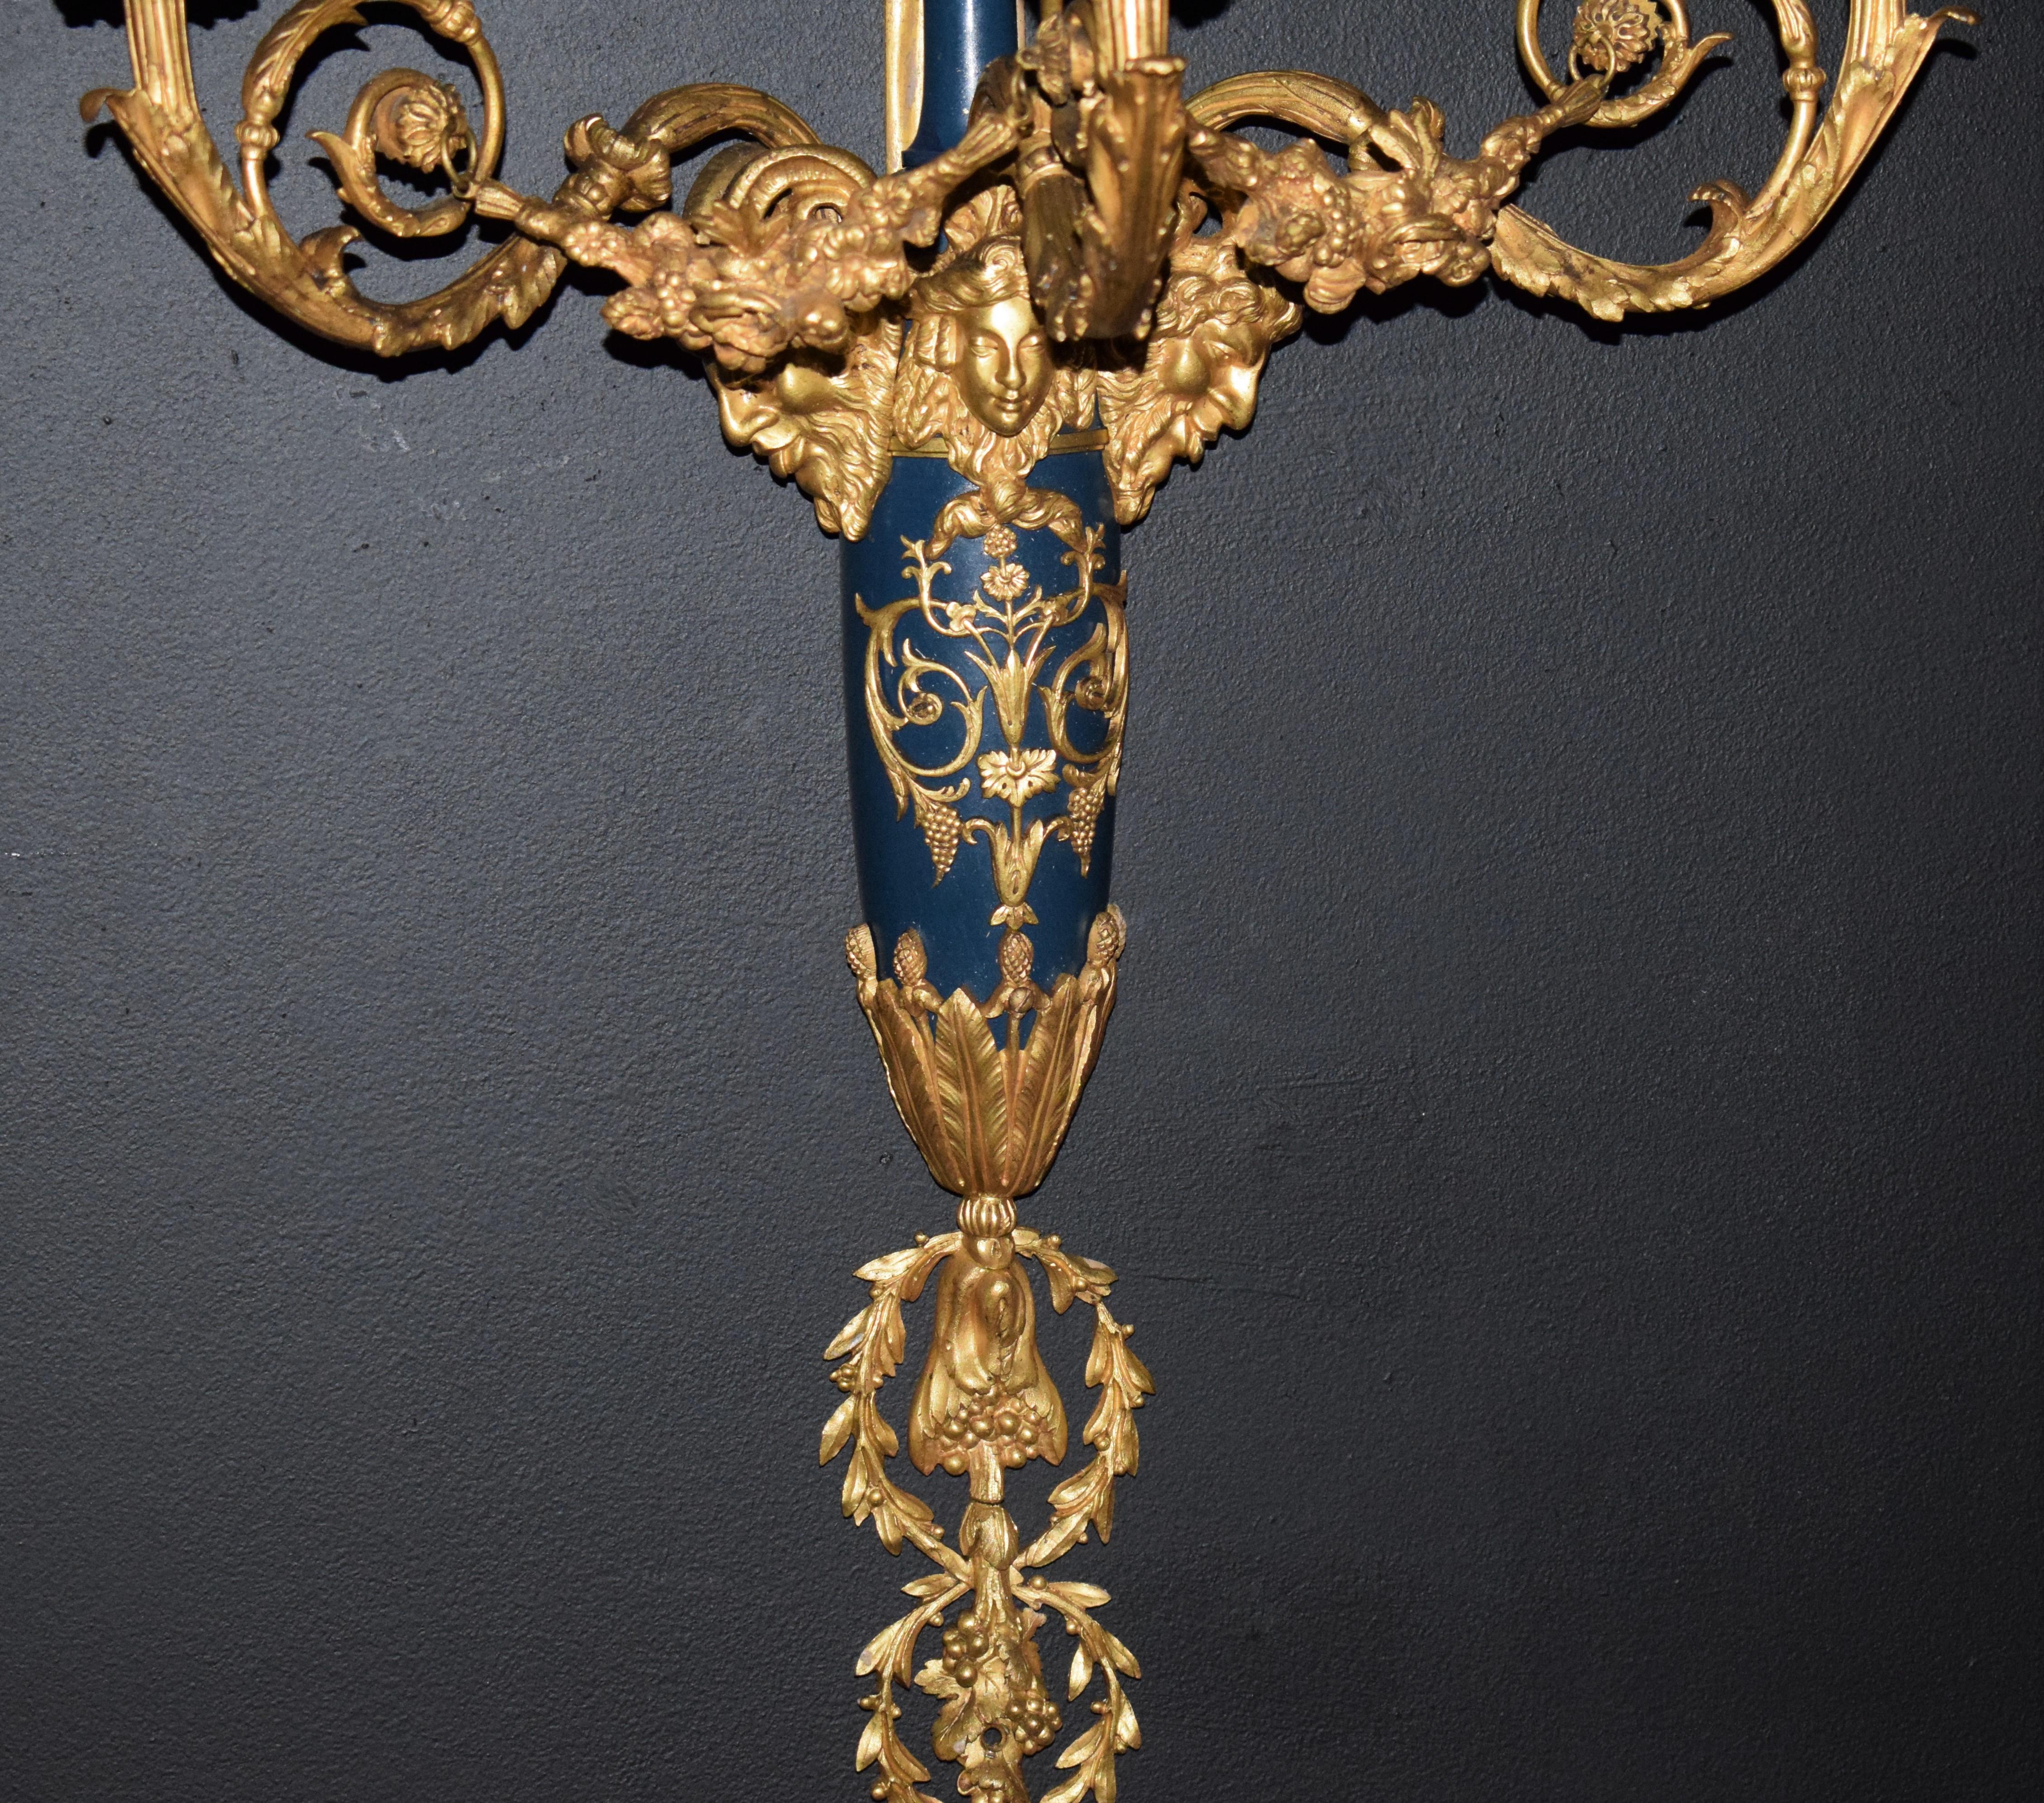 Wandleuchter im Stil Louis XVI. Ein sehr schönes Paar teilweise emaillierter und vergoldeter Bronzewandleuchter im Louis XVI-Stil mit drei Leuchten. Frankreich, um 1900.

Abmessungen: Tiefe 11 1/2 x Höhe 37 x Breite 18 Zoll.

CW4867.